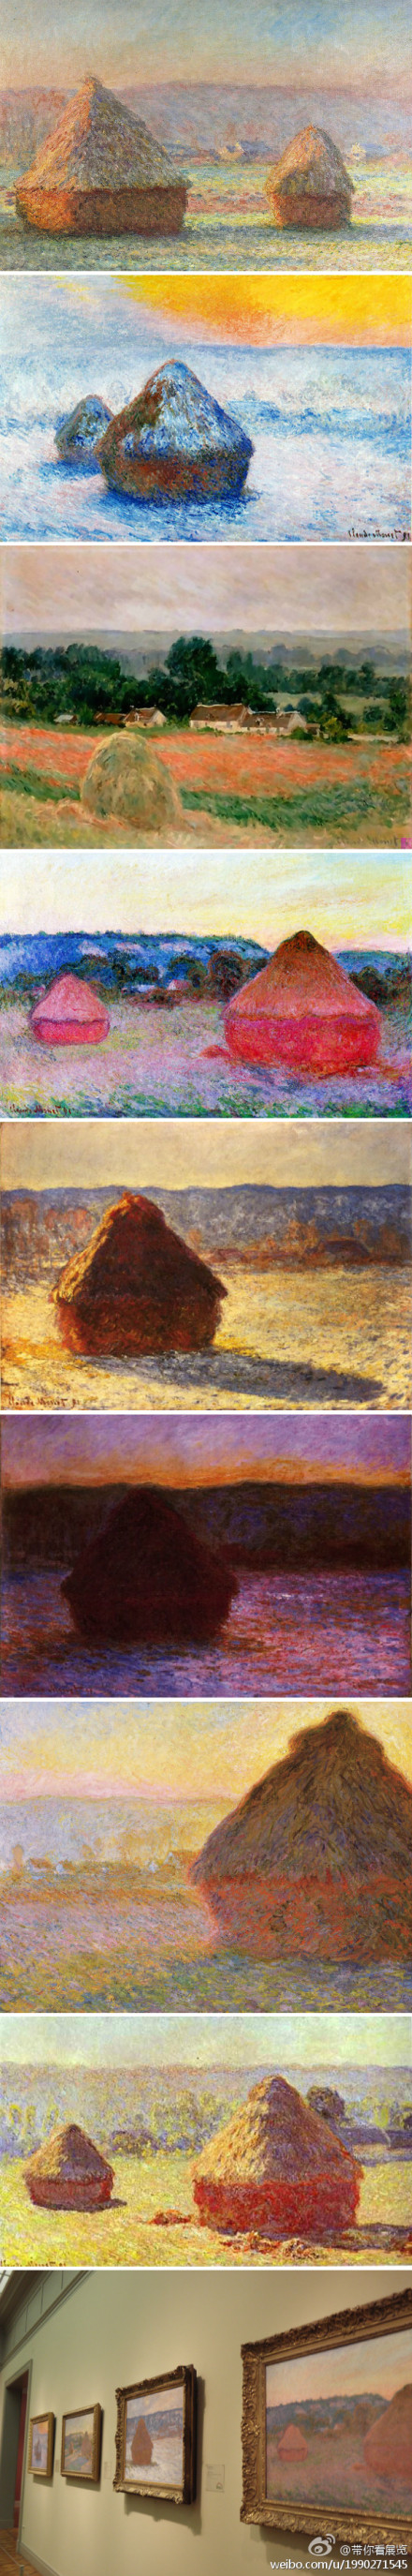 莫奈的《干草堆》油画系列